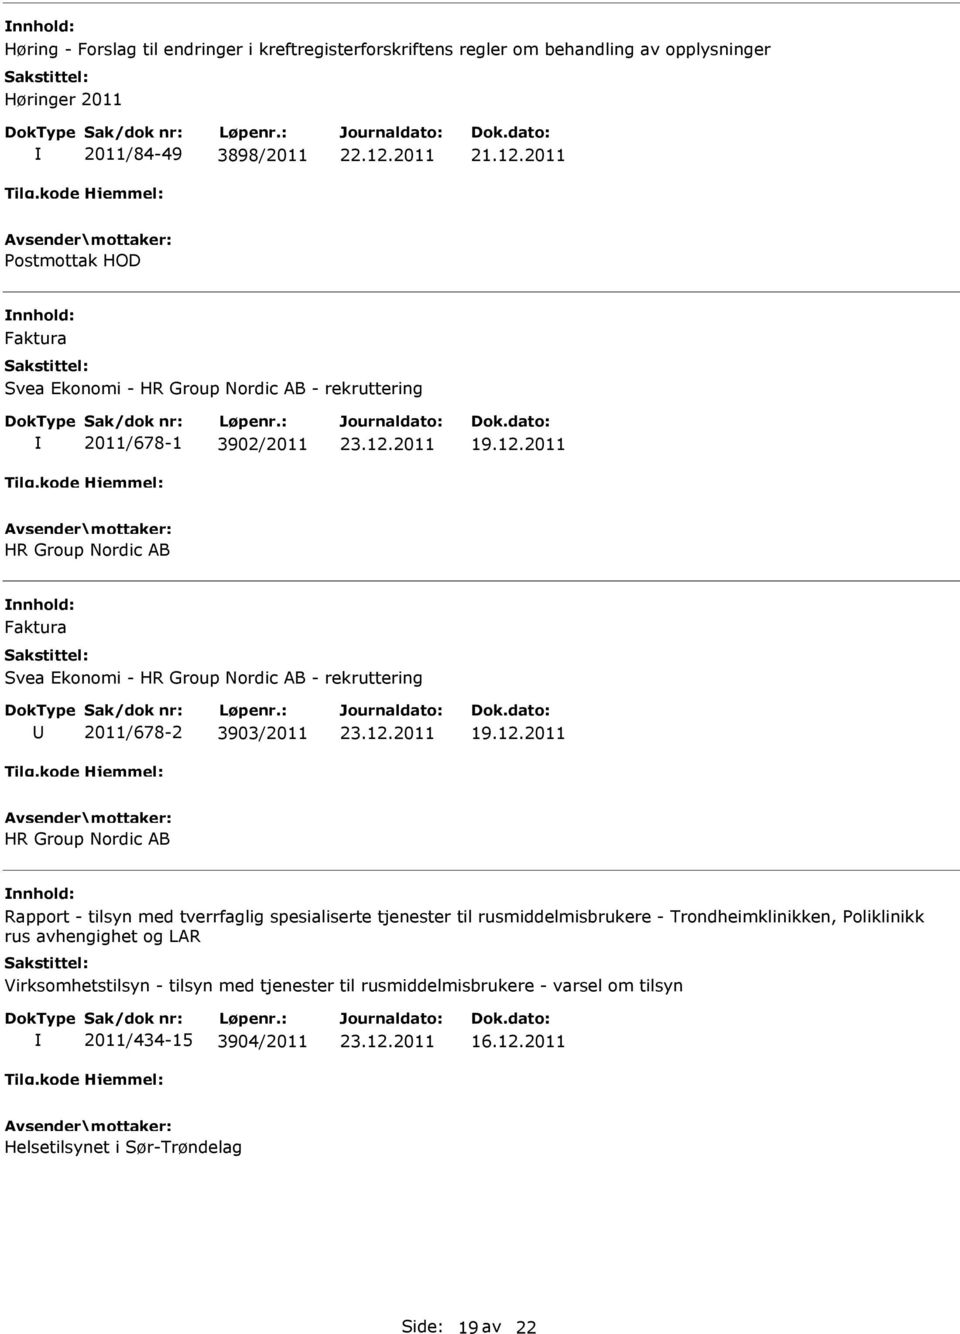 rekruttering 2011/678-2 3903/2011 HR Group Nordic AB Rapport - tilsyn med tverrfaglig spesialiserte tjenester til rusmiddelmisbrukere - Trondheimklinikken,